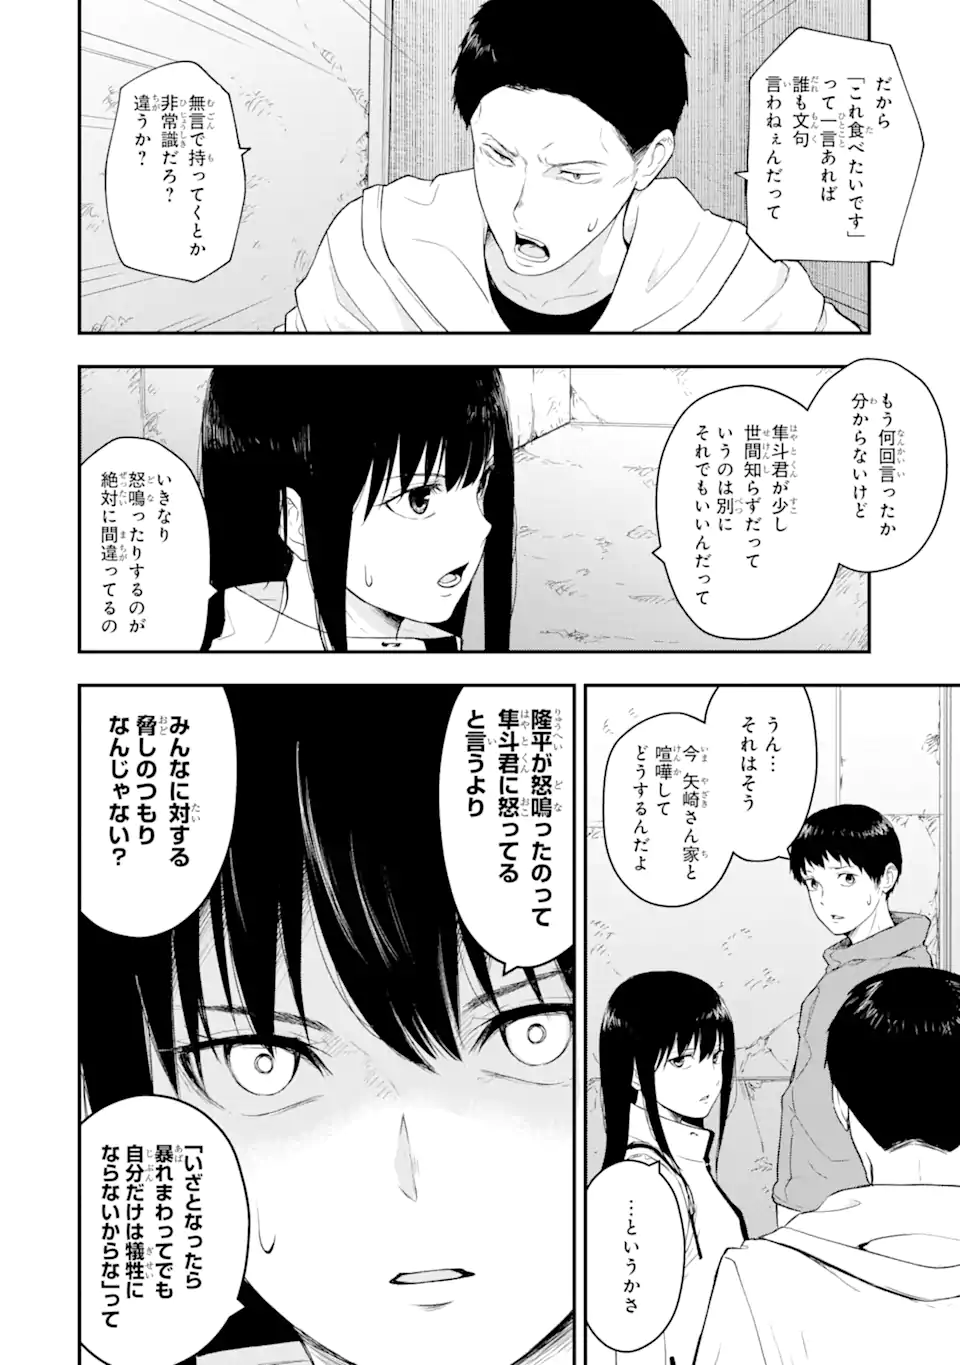 Hakobune – Shinubeki na no wa Dare ka? - Chapter 4.3 - Page 1